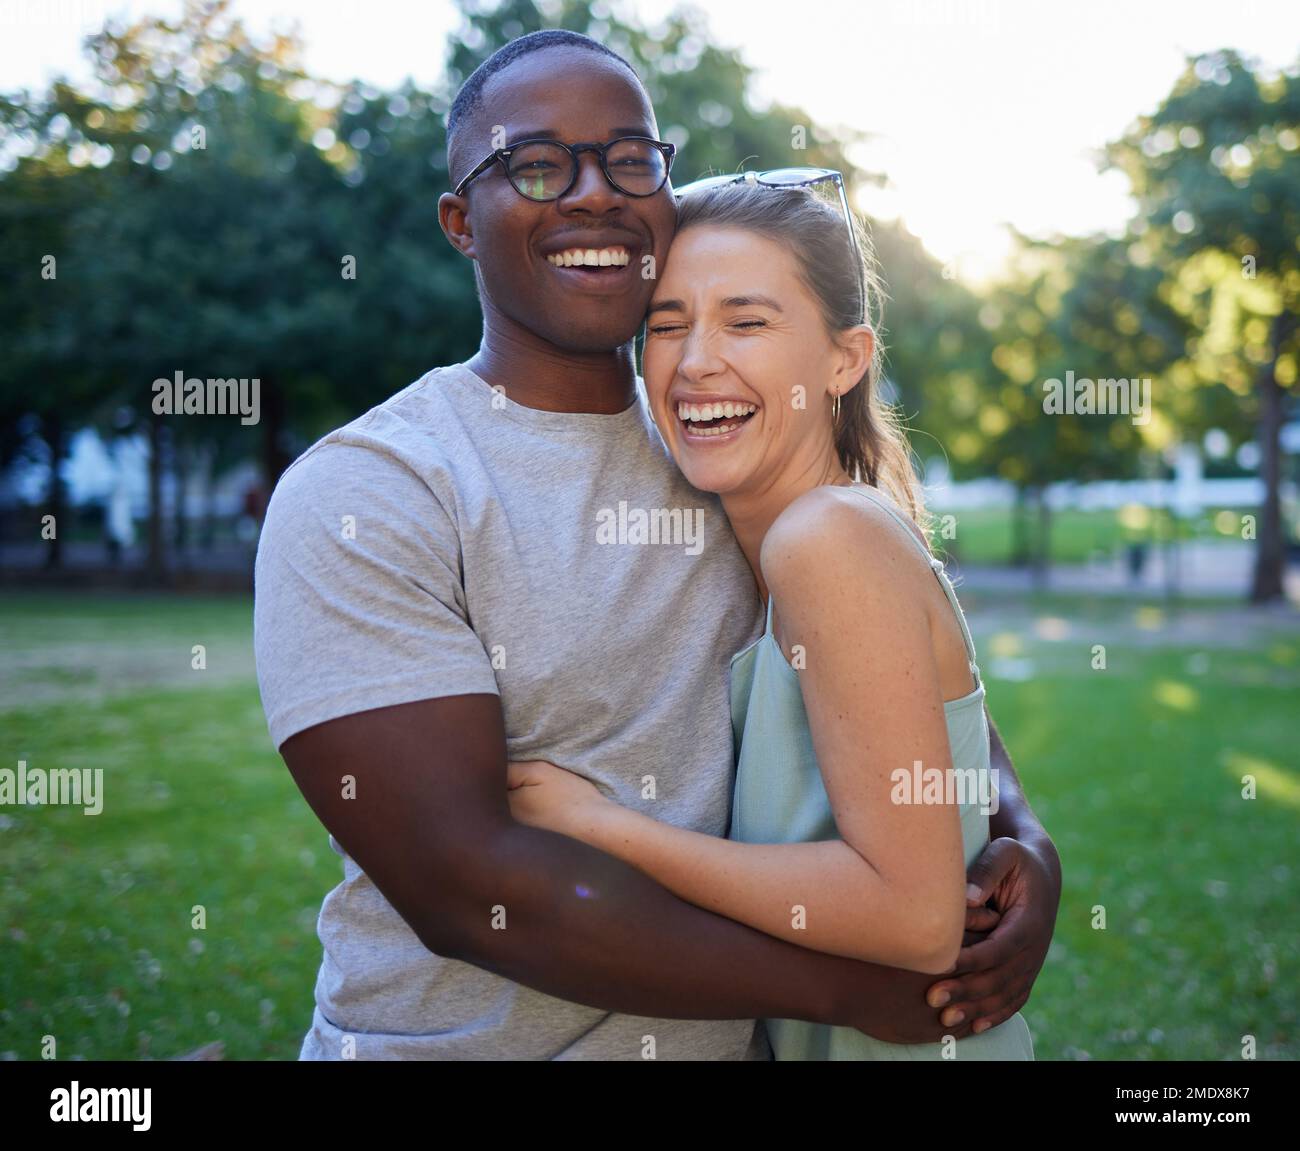 Liebe, Rassenfreunde oder ein paar Freunde umarmen sich bei einem romantischen Date in einem Park und verbinden sich in der Natur miteinander. Romantik, lustiger schwarzer Mann und lachende Frau Stockfoto